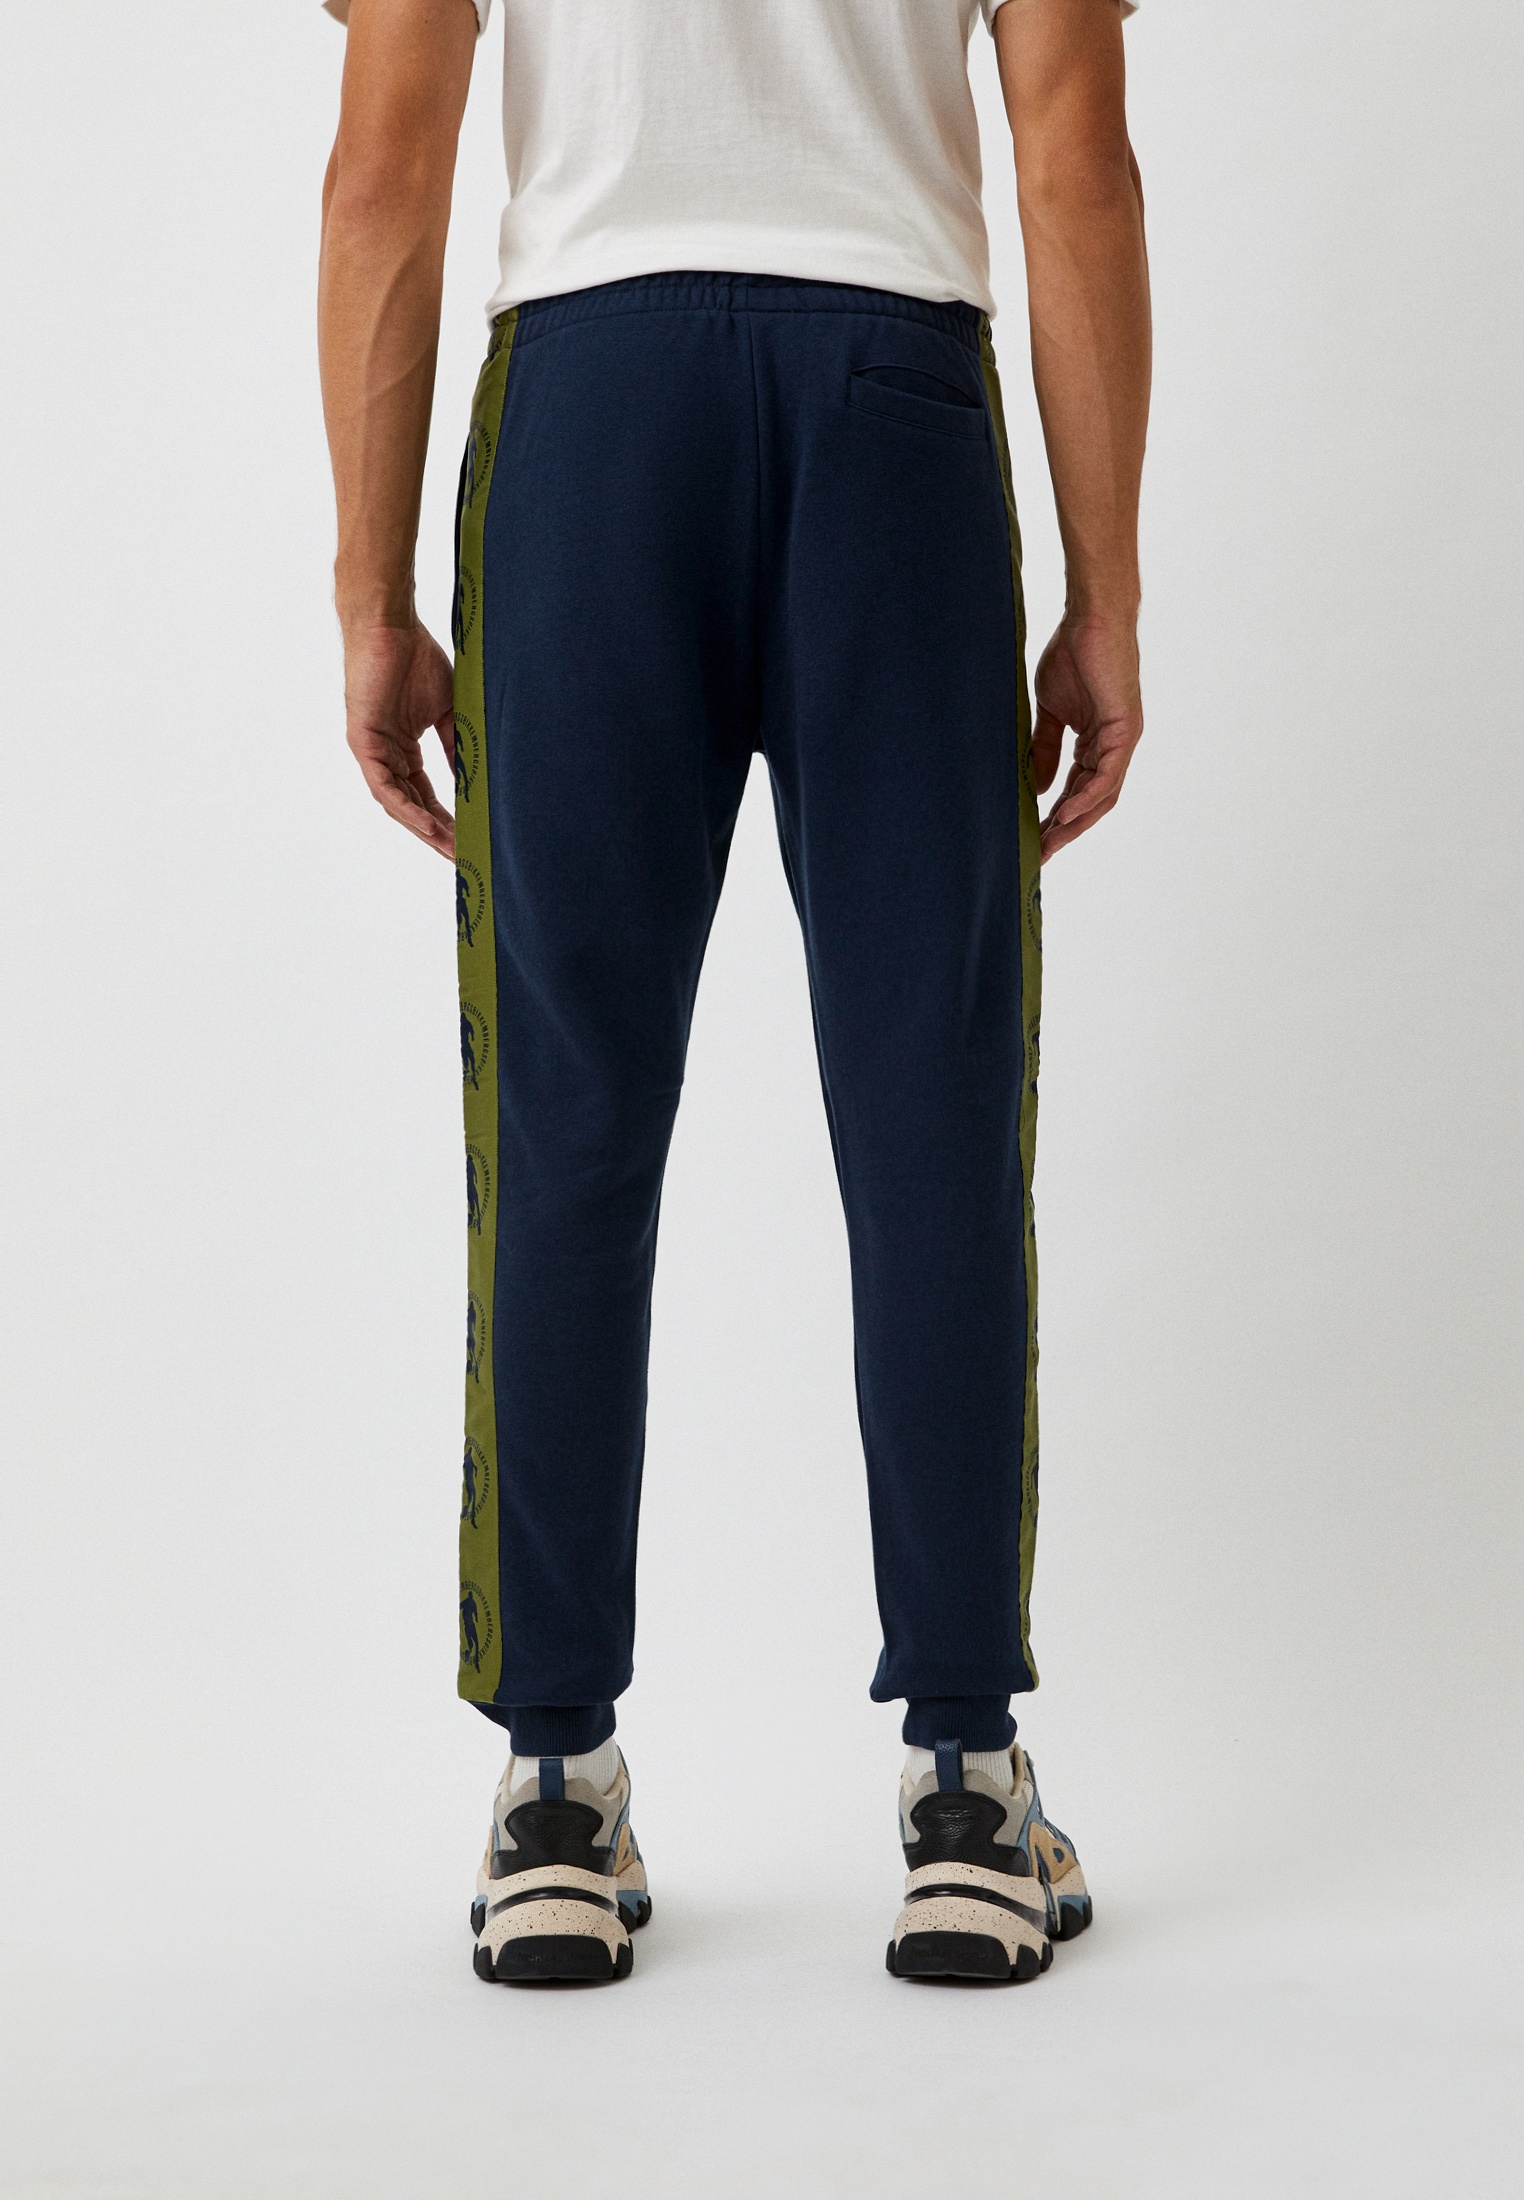 Мужские спортивные брюки Bikkembergs (Биккембергс) C 1 226 80 M 4326: изображение 7